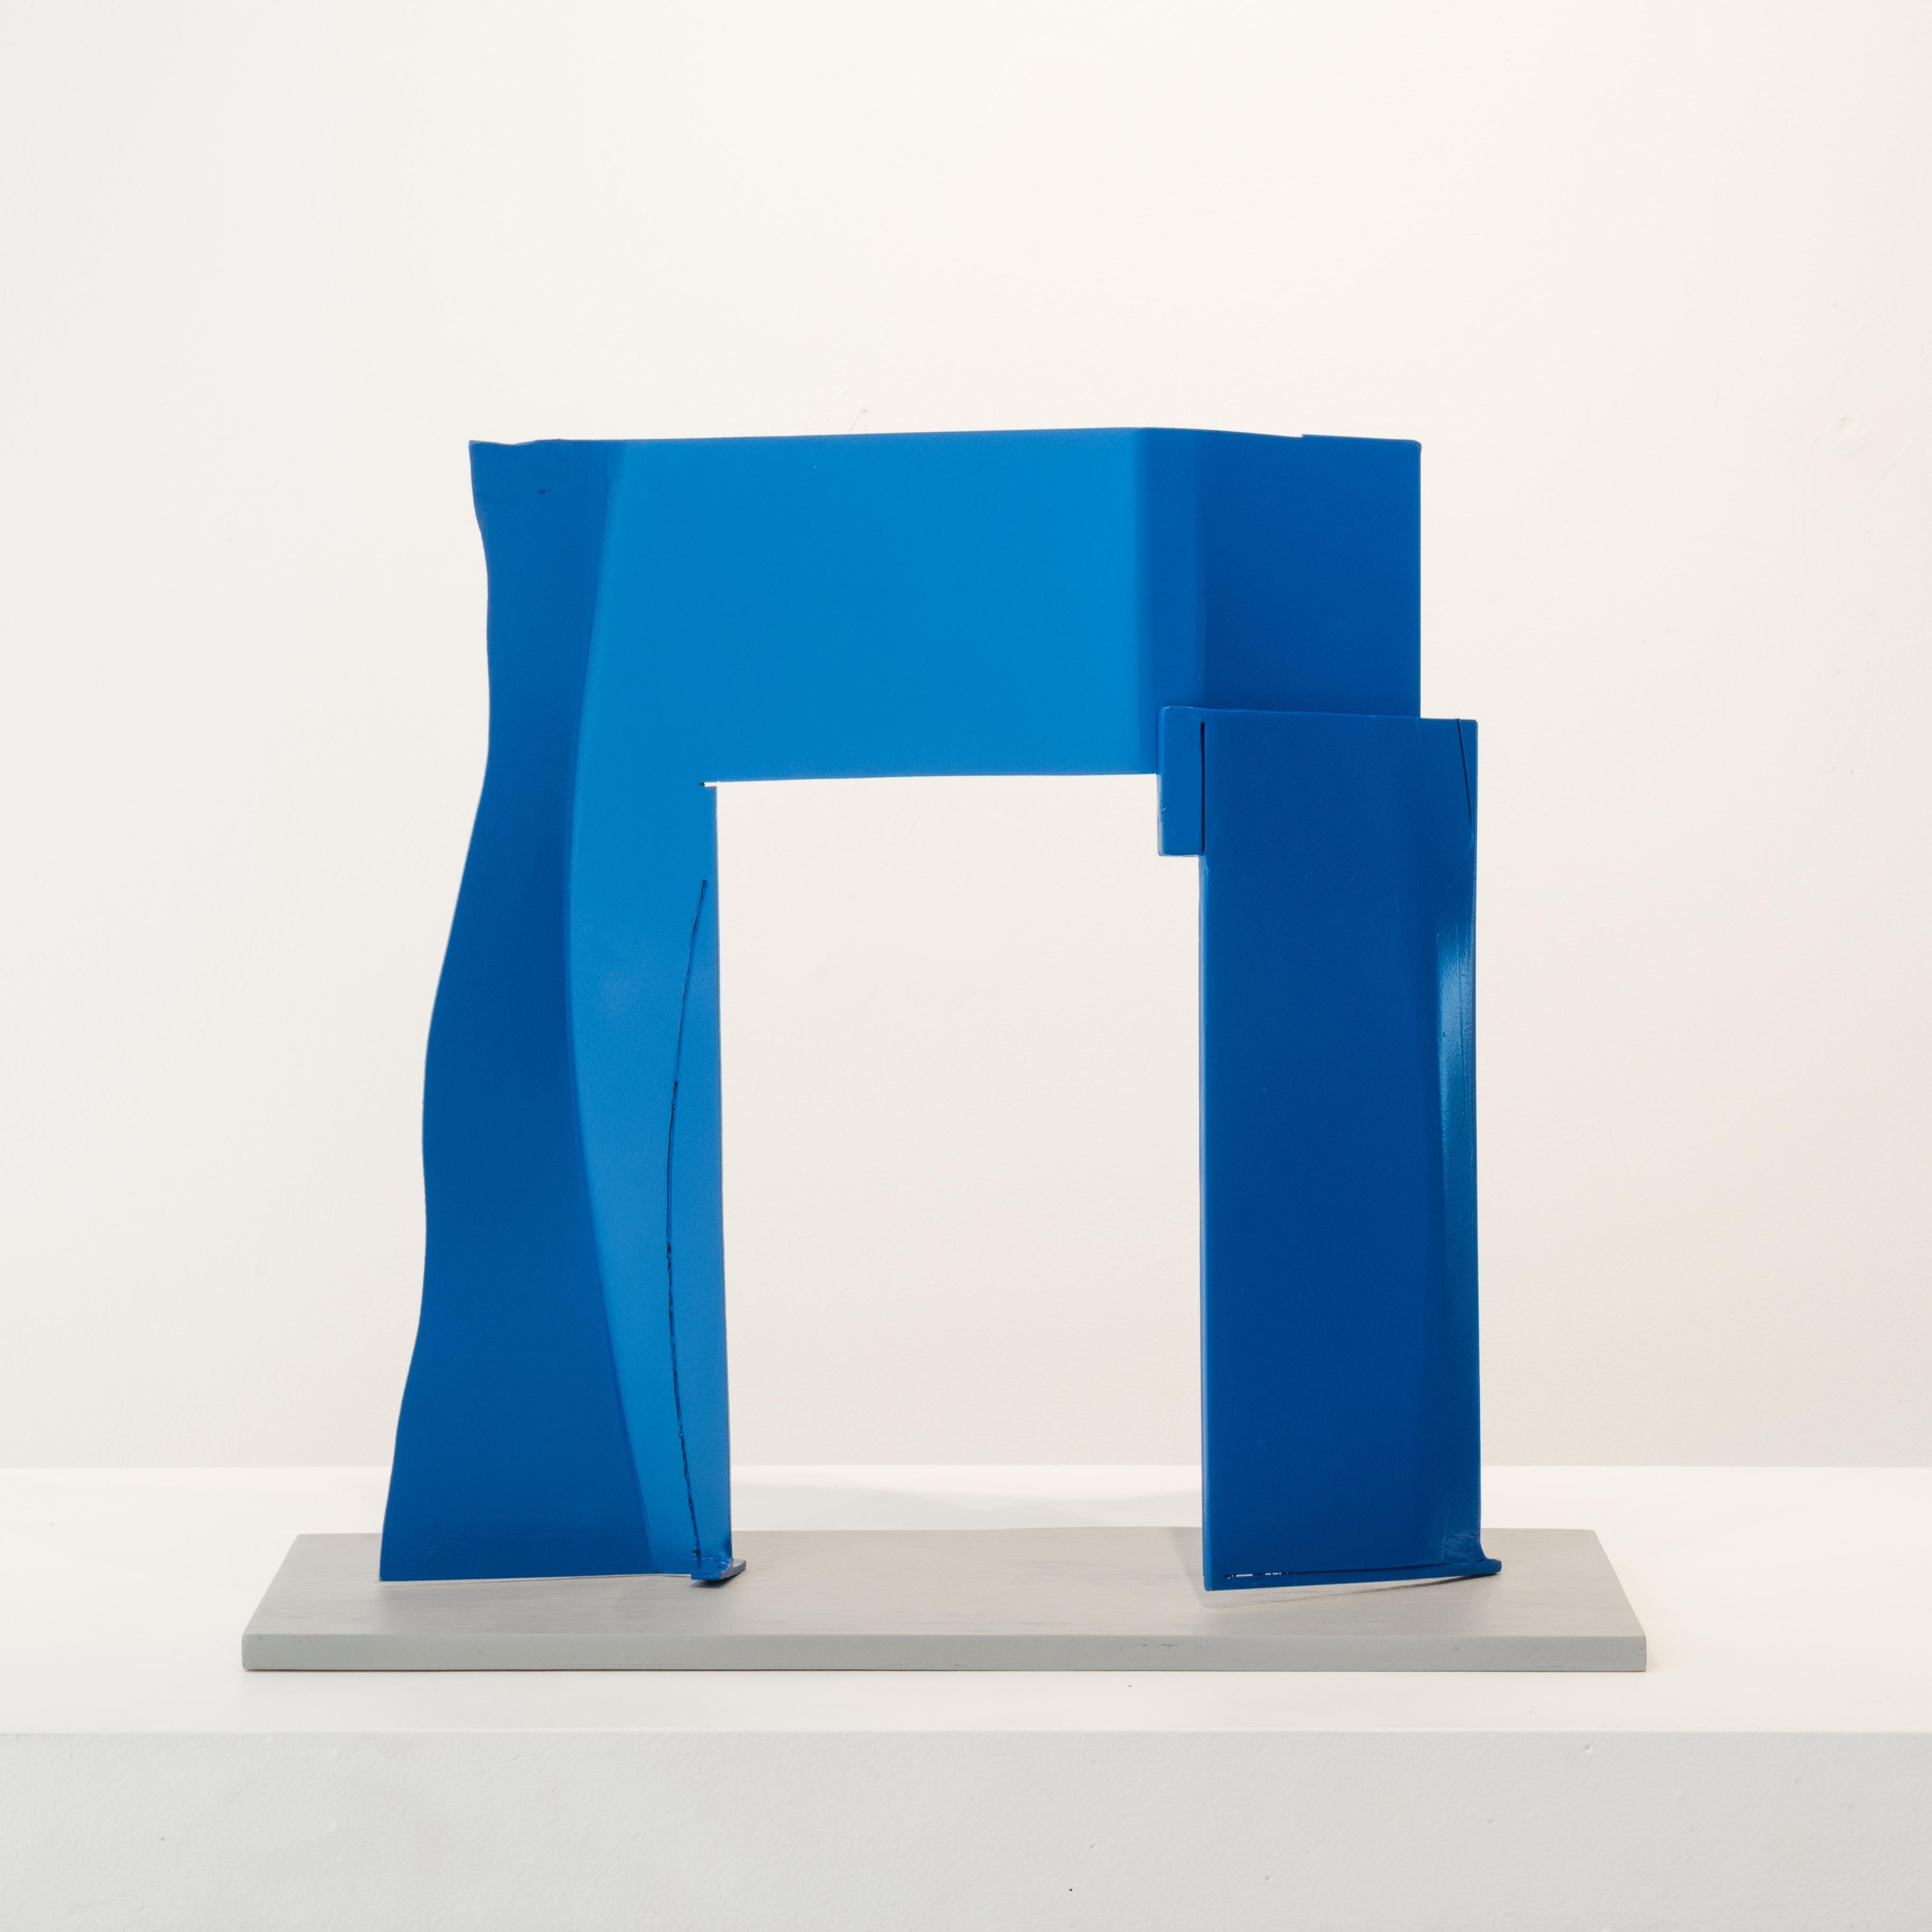 Robert Murray Abstract Sculpture - Blue Arch, aluminum sculpture painted blue (maquette)